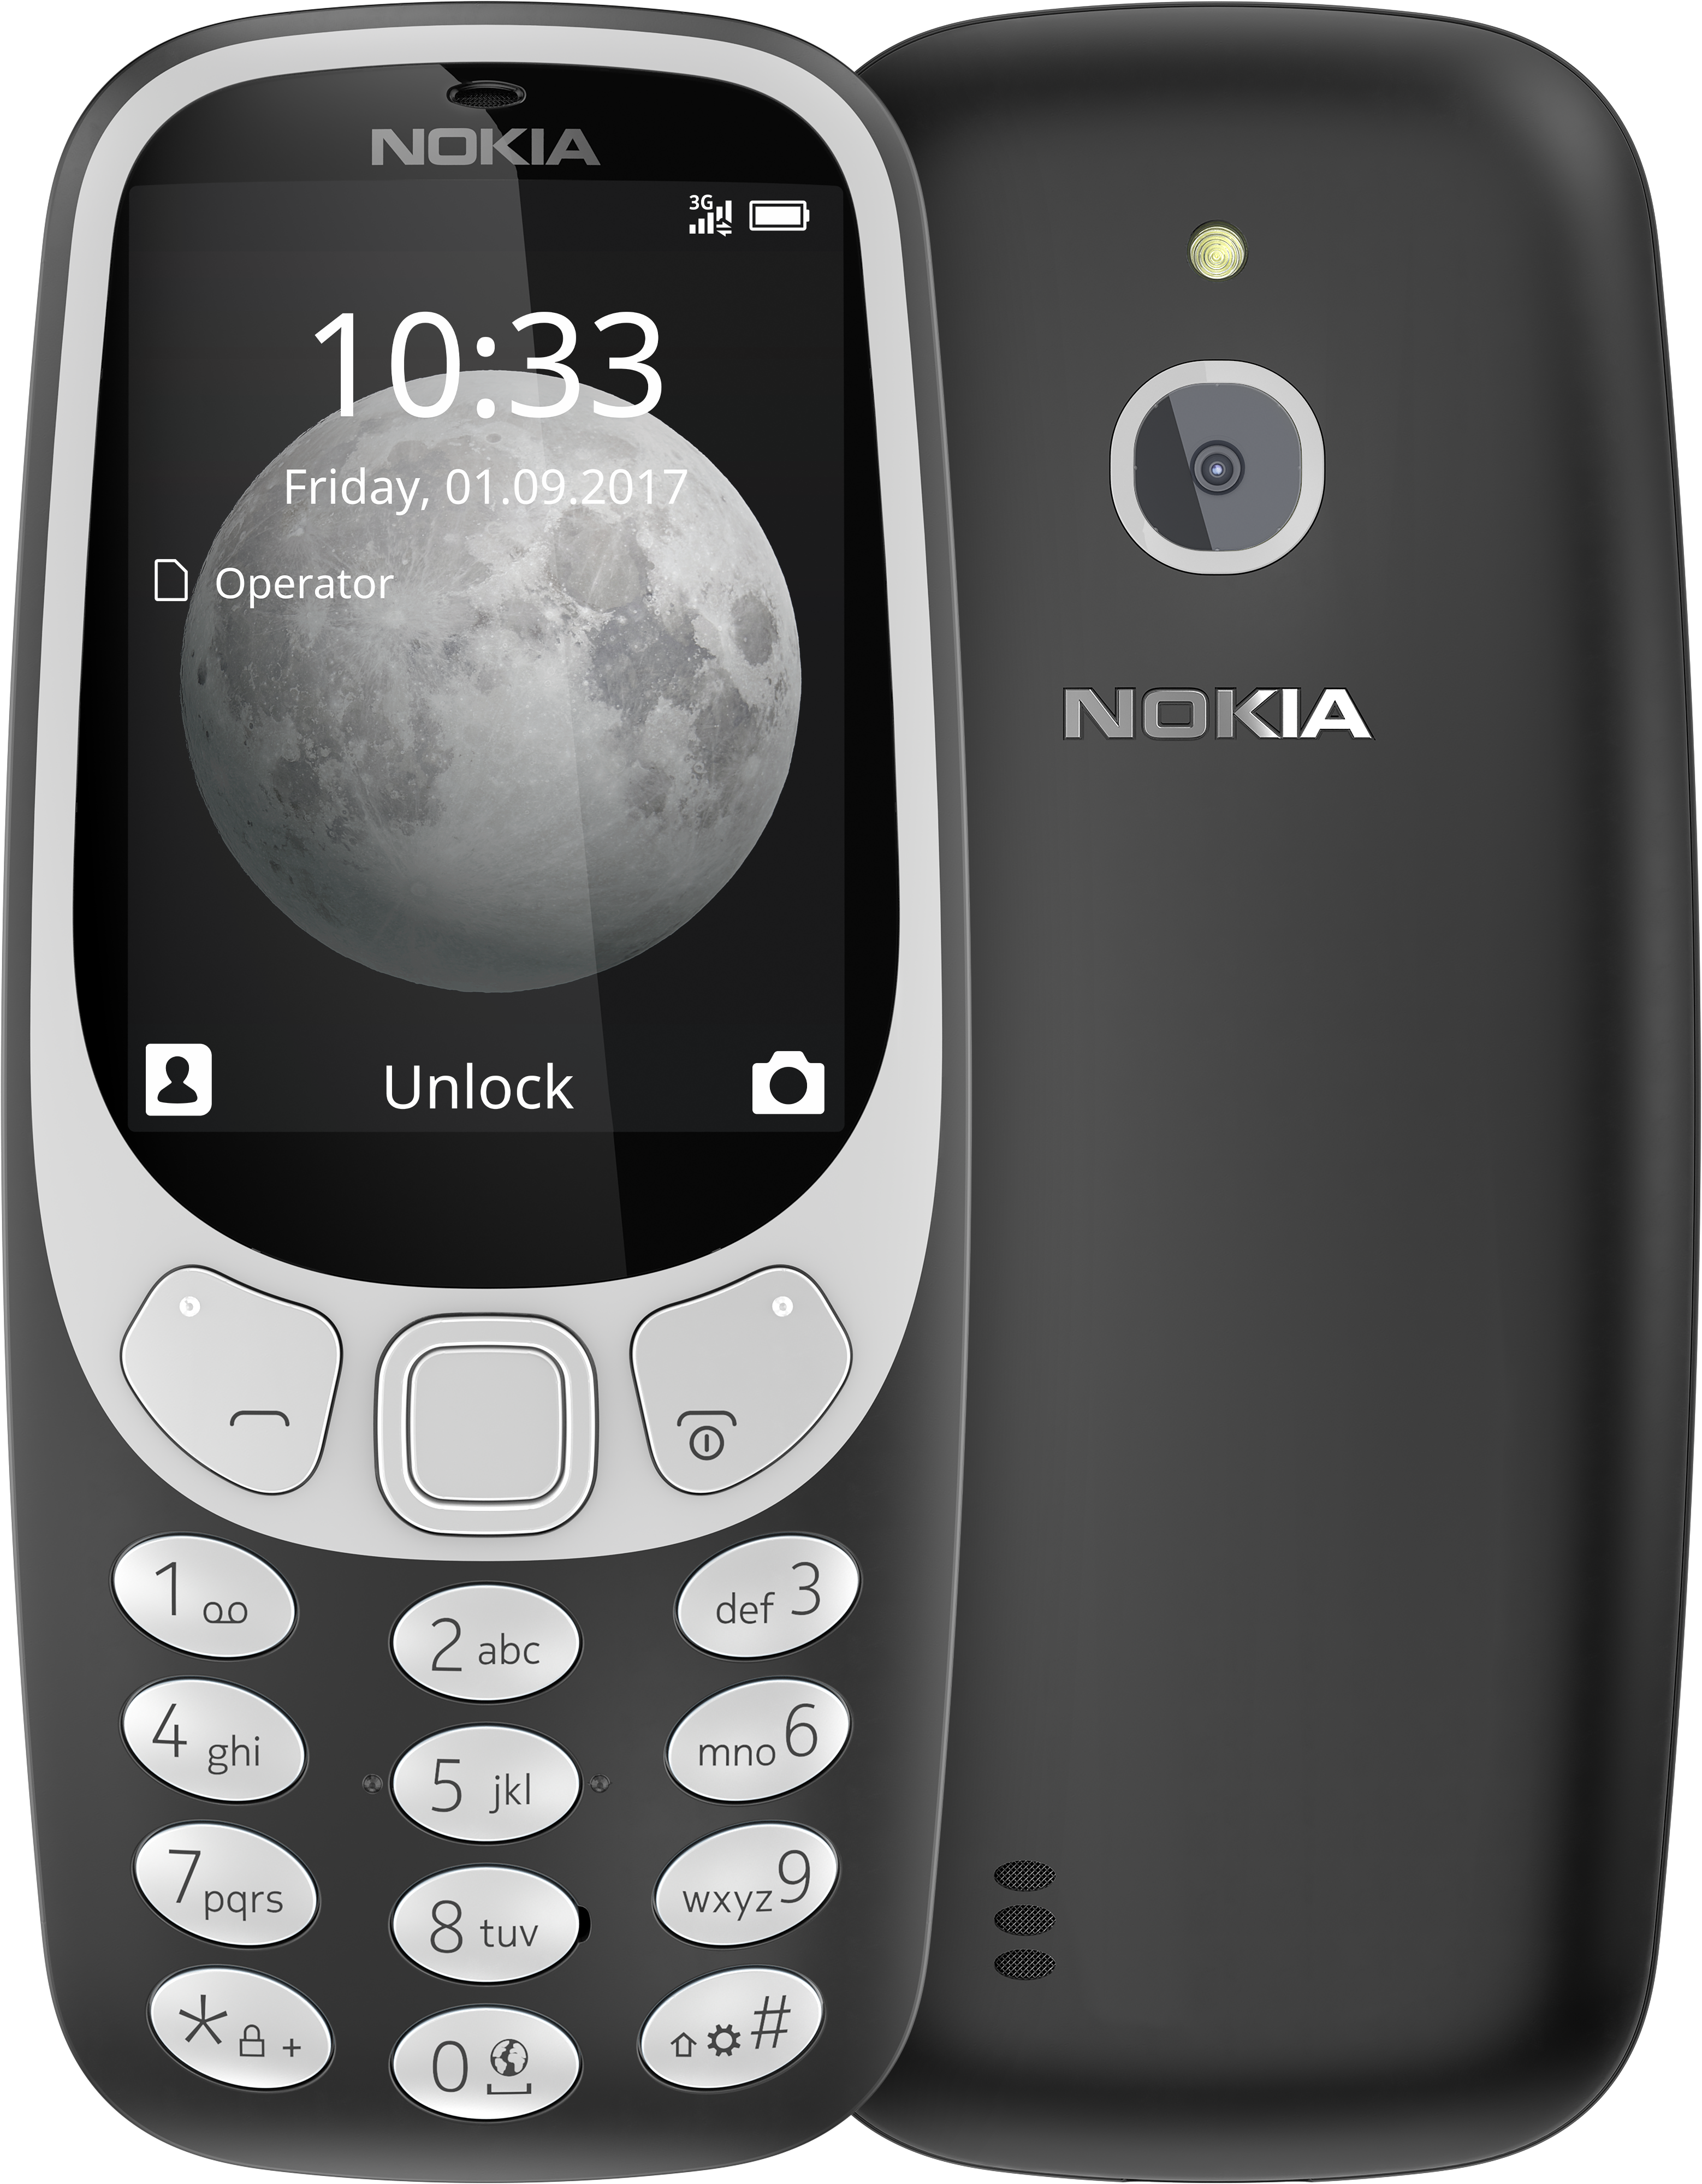 Faret vild Godkendelse Bunke af Nokia 3310 3G mobile phone | Legacy basic phone with 3G